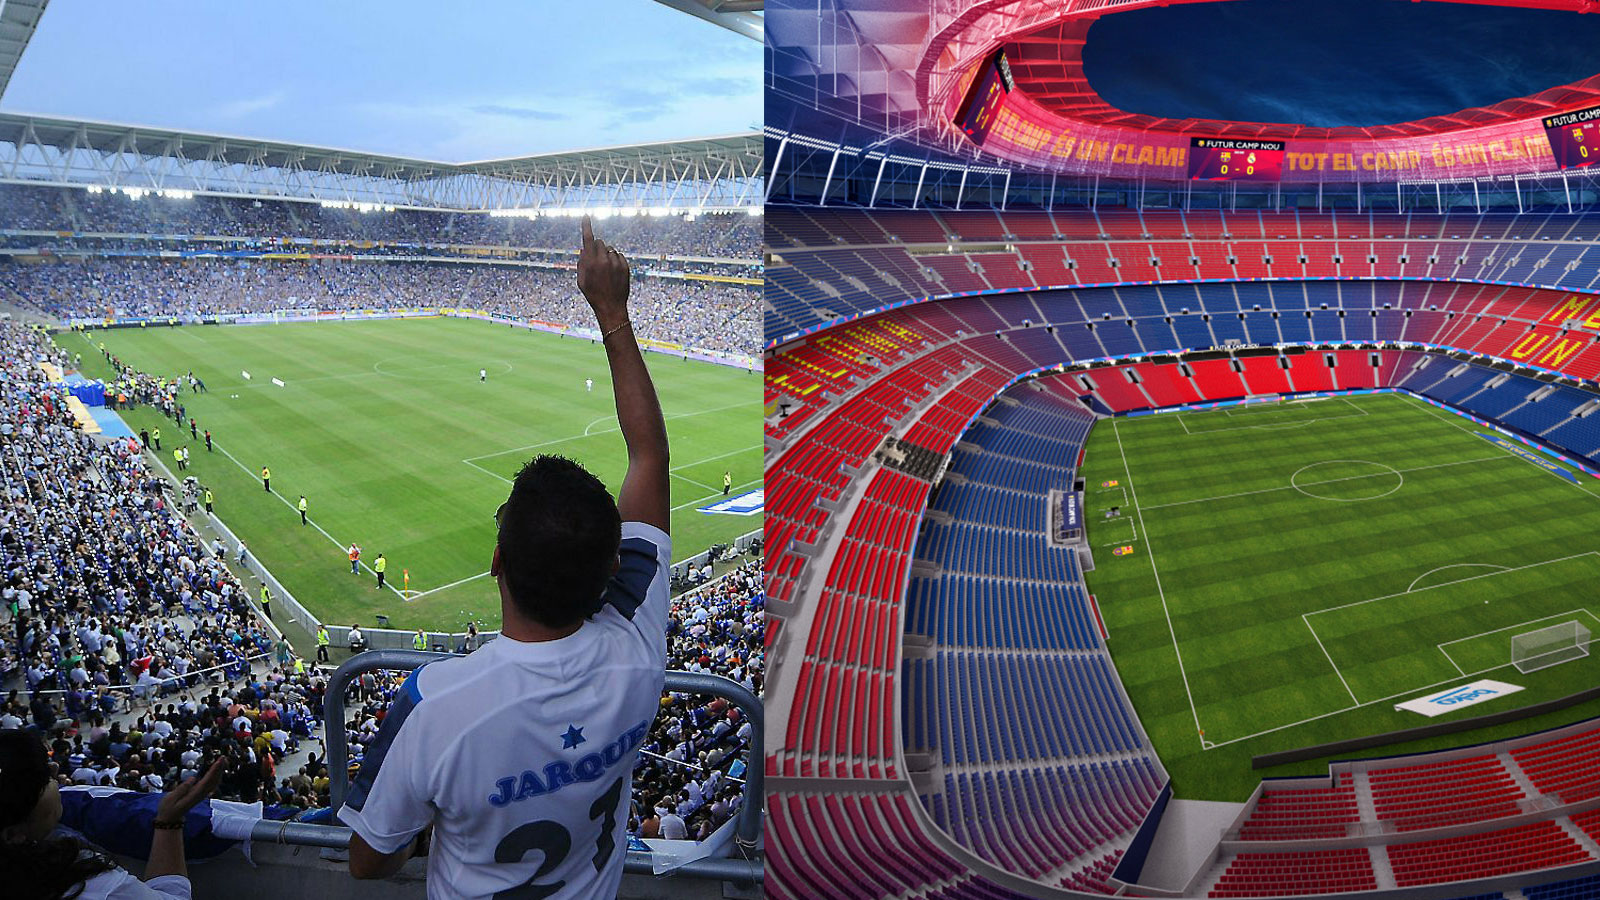 Els estadis de futbol de l'espanyol i del Barcelona equipan portes TECNO